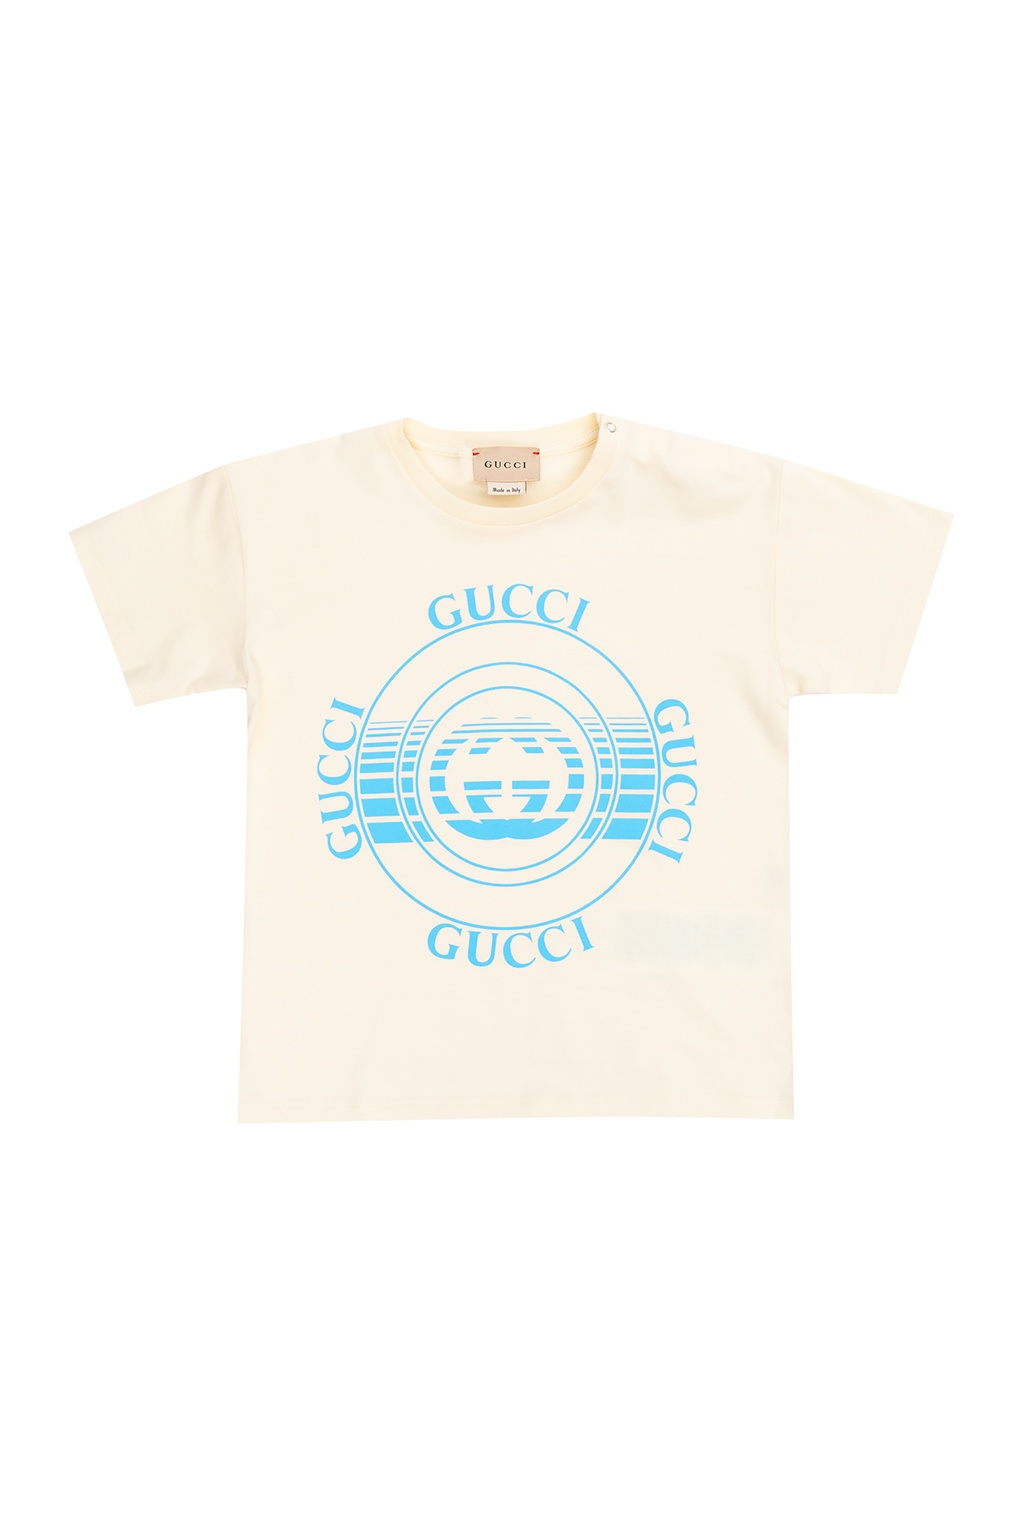 gucci children t shirt